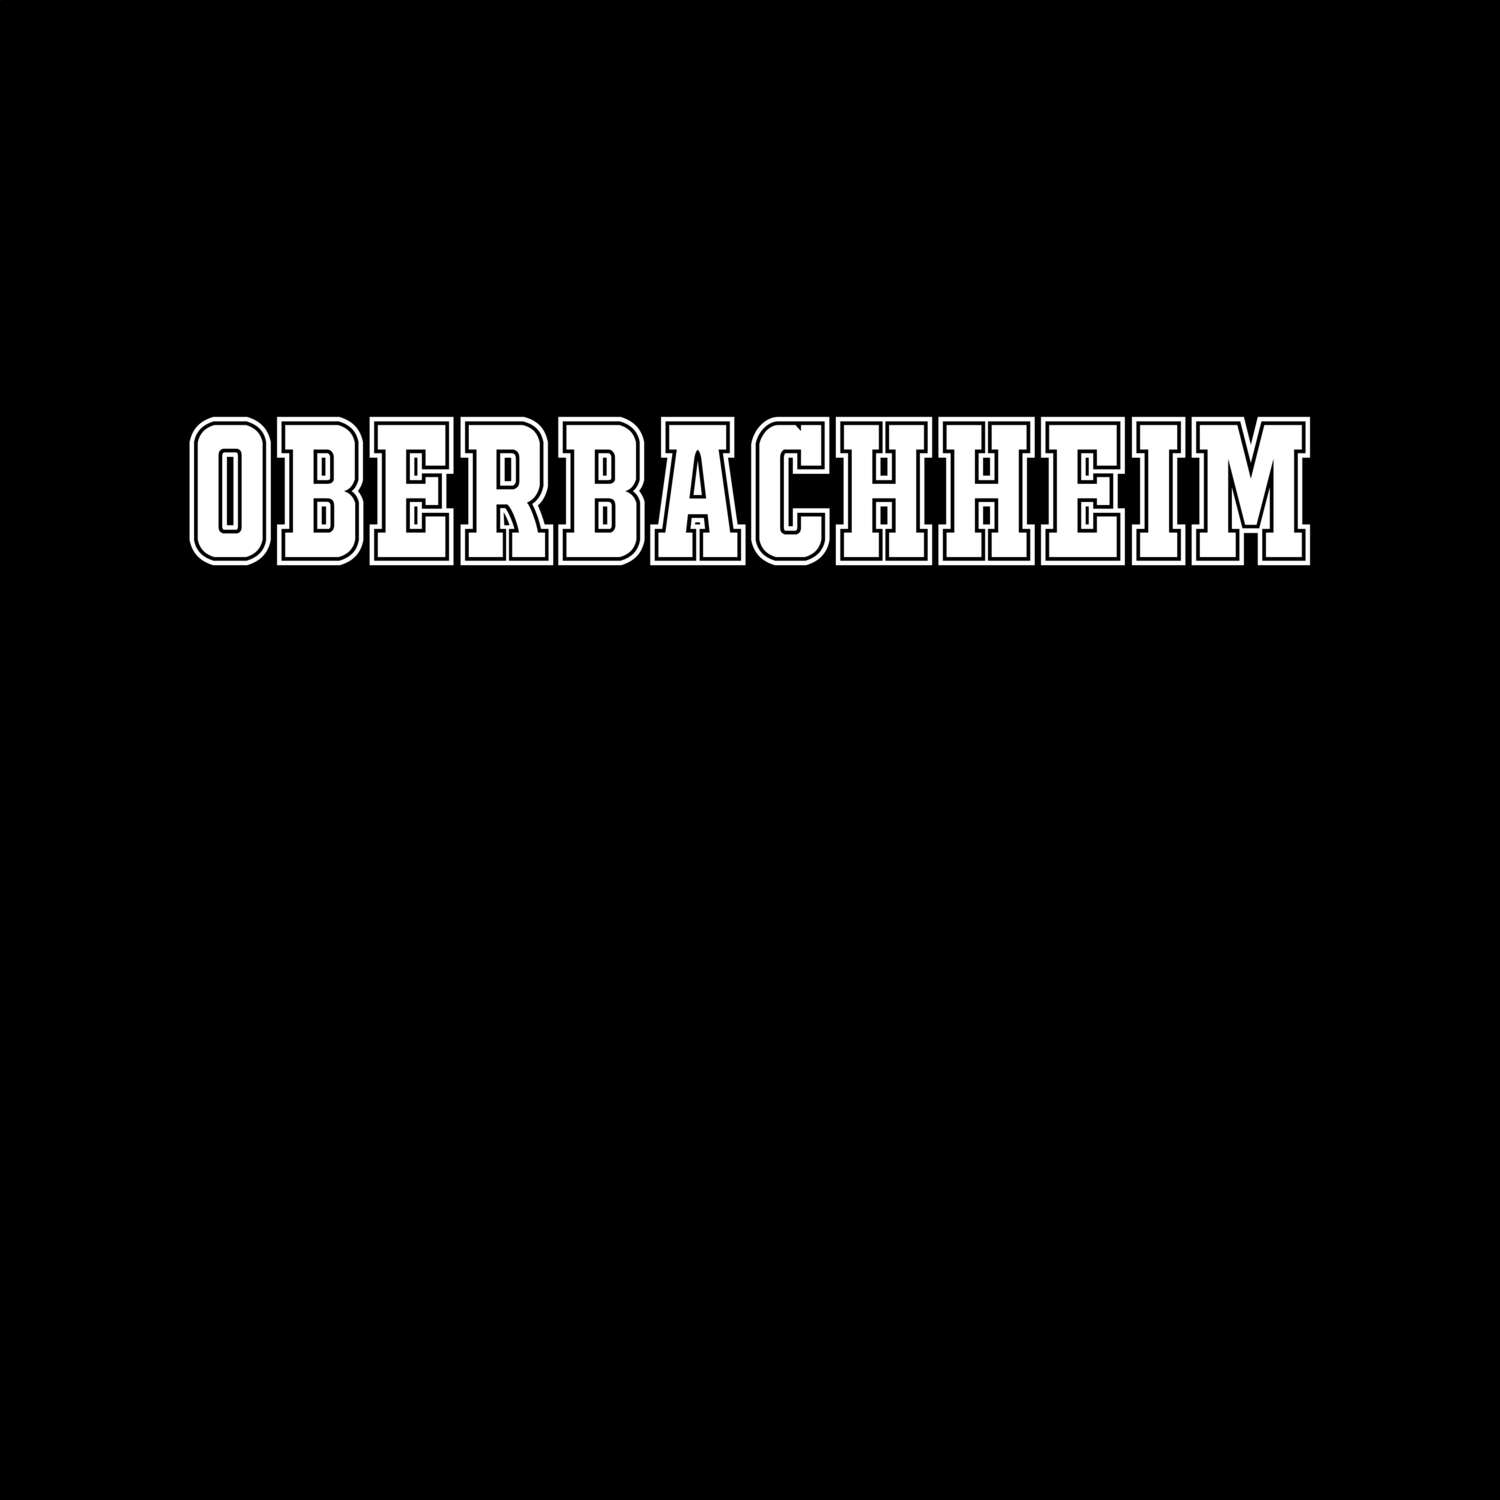 Oberbachheim T-Shirt »Classic«